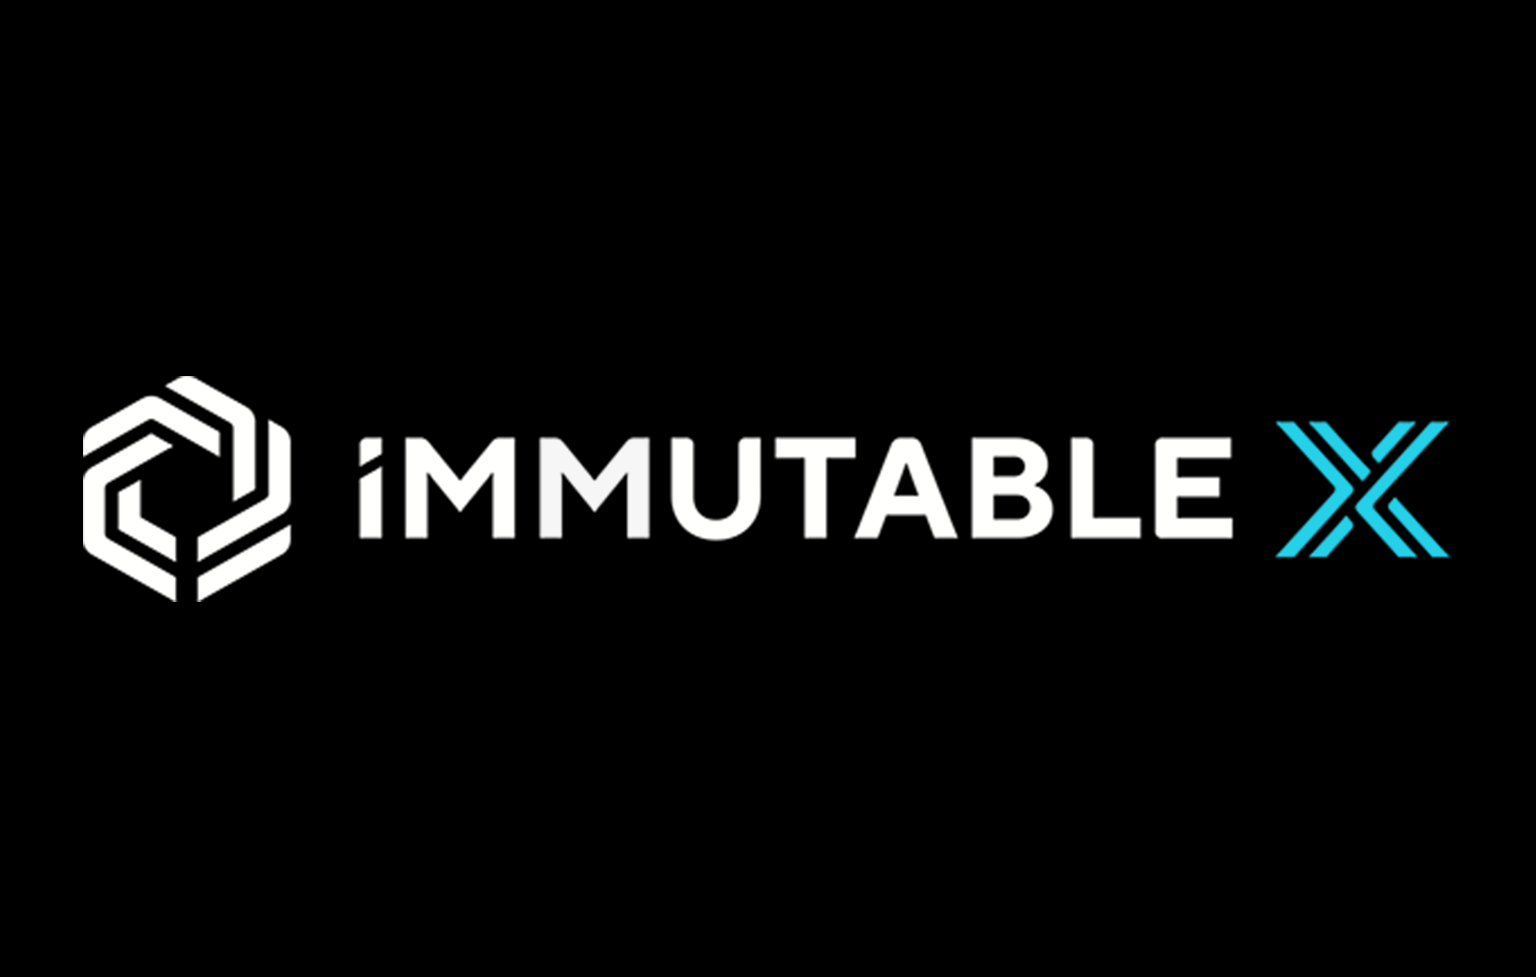 มาดูกันว่า Immutable X คืออะไร? เหรียญ IMX ใช้ทำอะไรบ้าง?